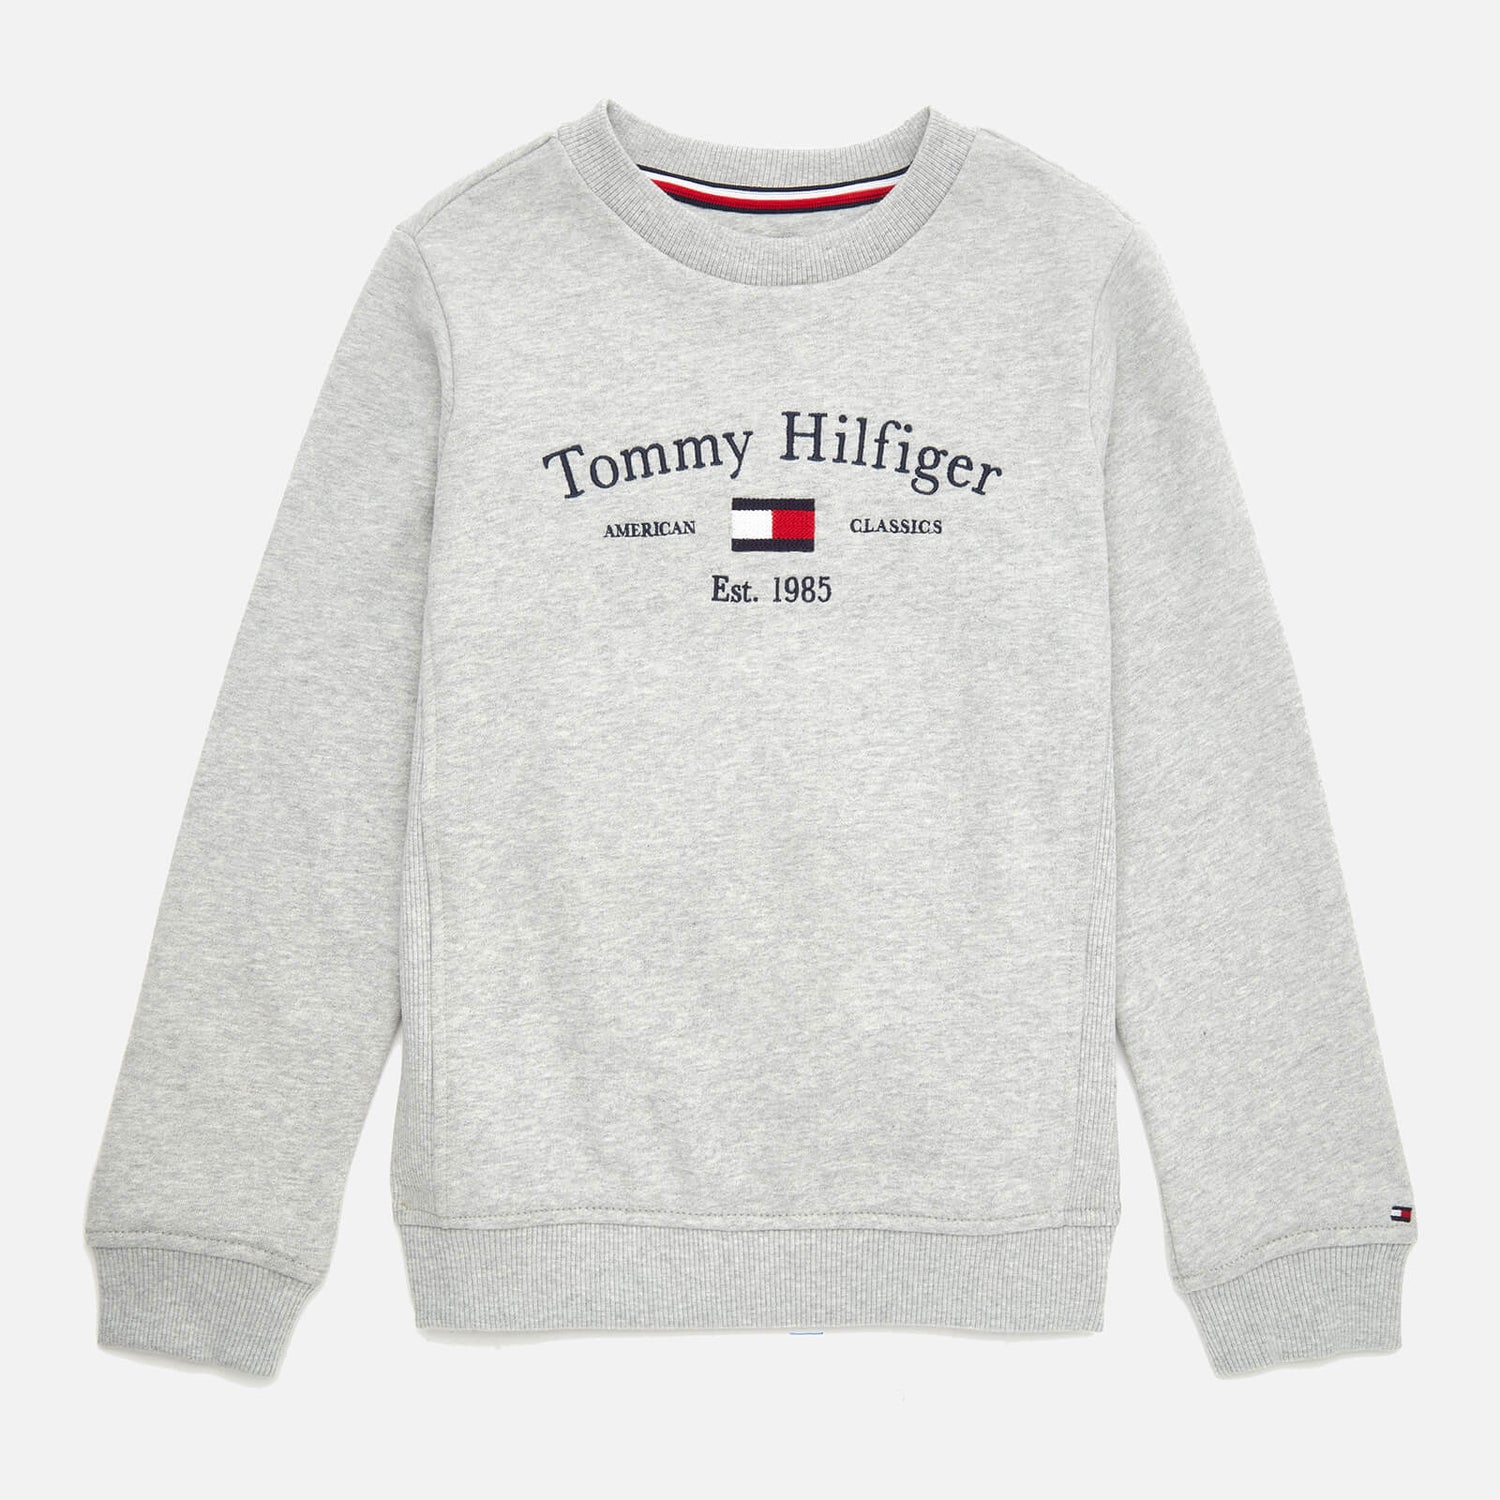 Tommy Hilfiger Boys' Artwork Sweatshirt - Grey Heather